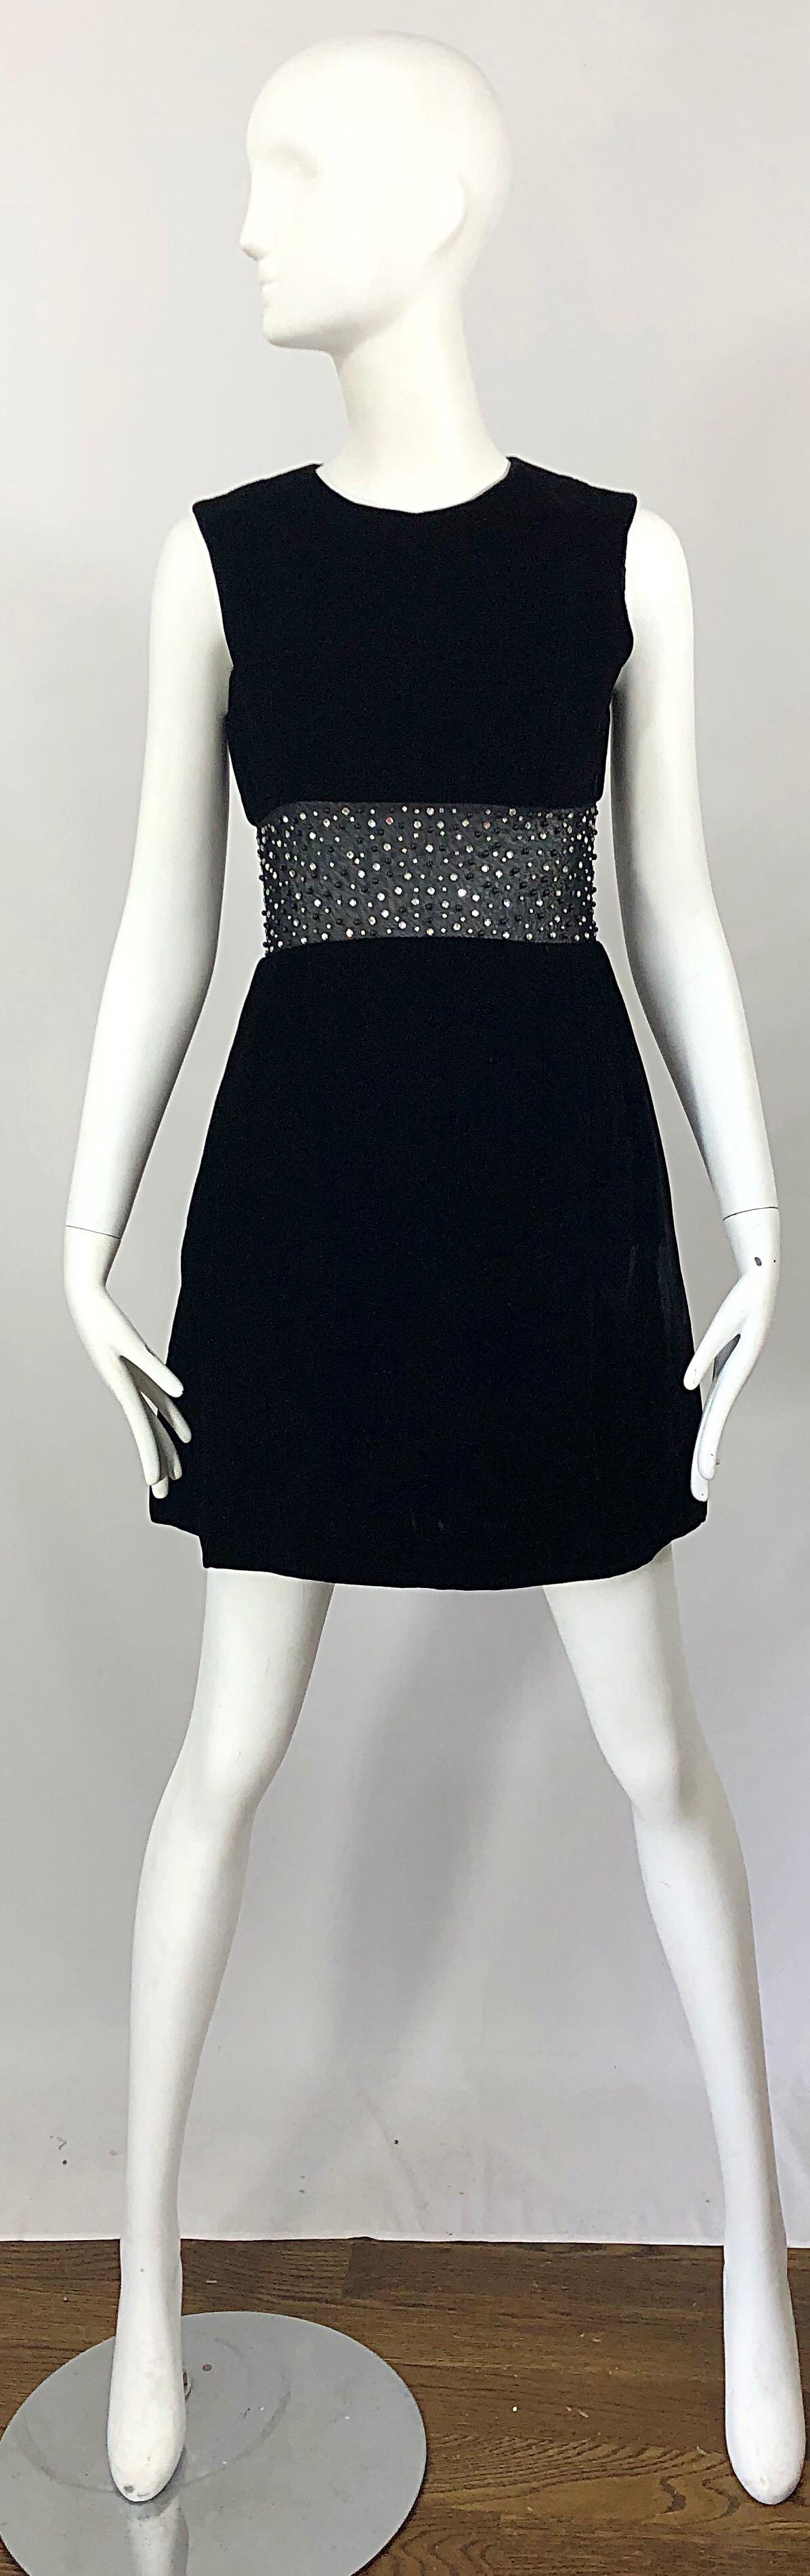 Schickes schwarzes Samtkleid mit A-Linien-Ausschnitt aus den 1960er Jahren! Aus weichem schwarzem Samt mit einem durchsichtigen schwarzen Netzausschnitt an der Taille. Über 100 handgenähte Strasssteine und Perlen auf der gesamten Verkleidung.